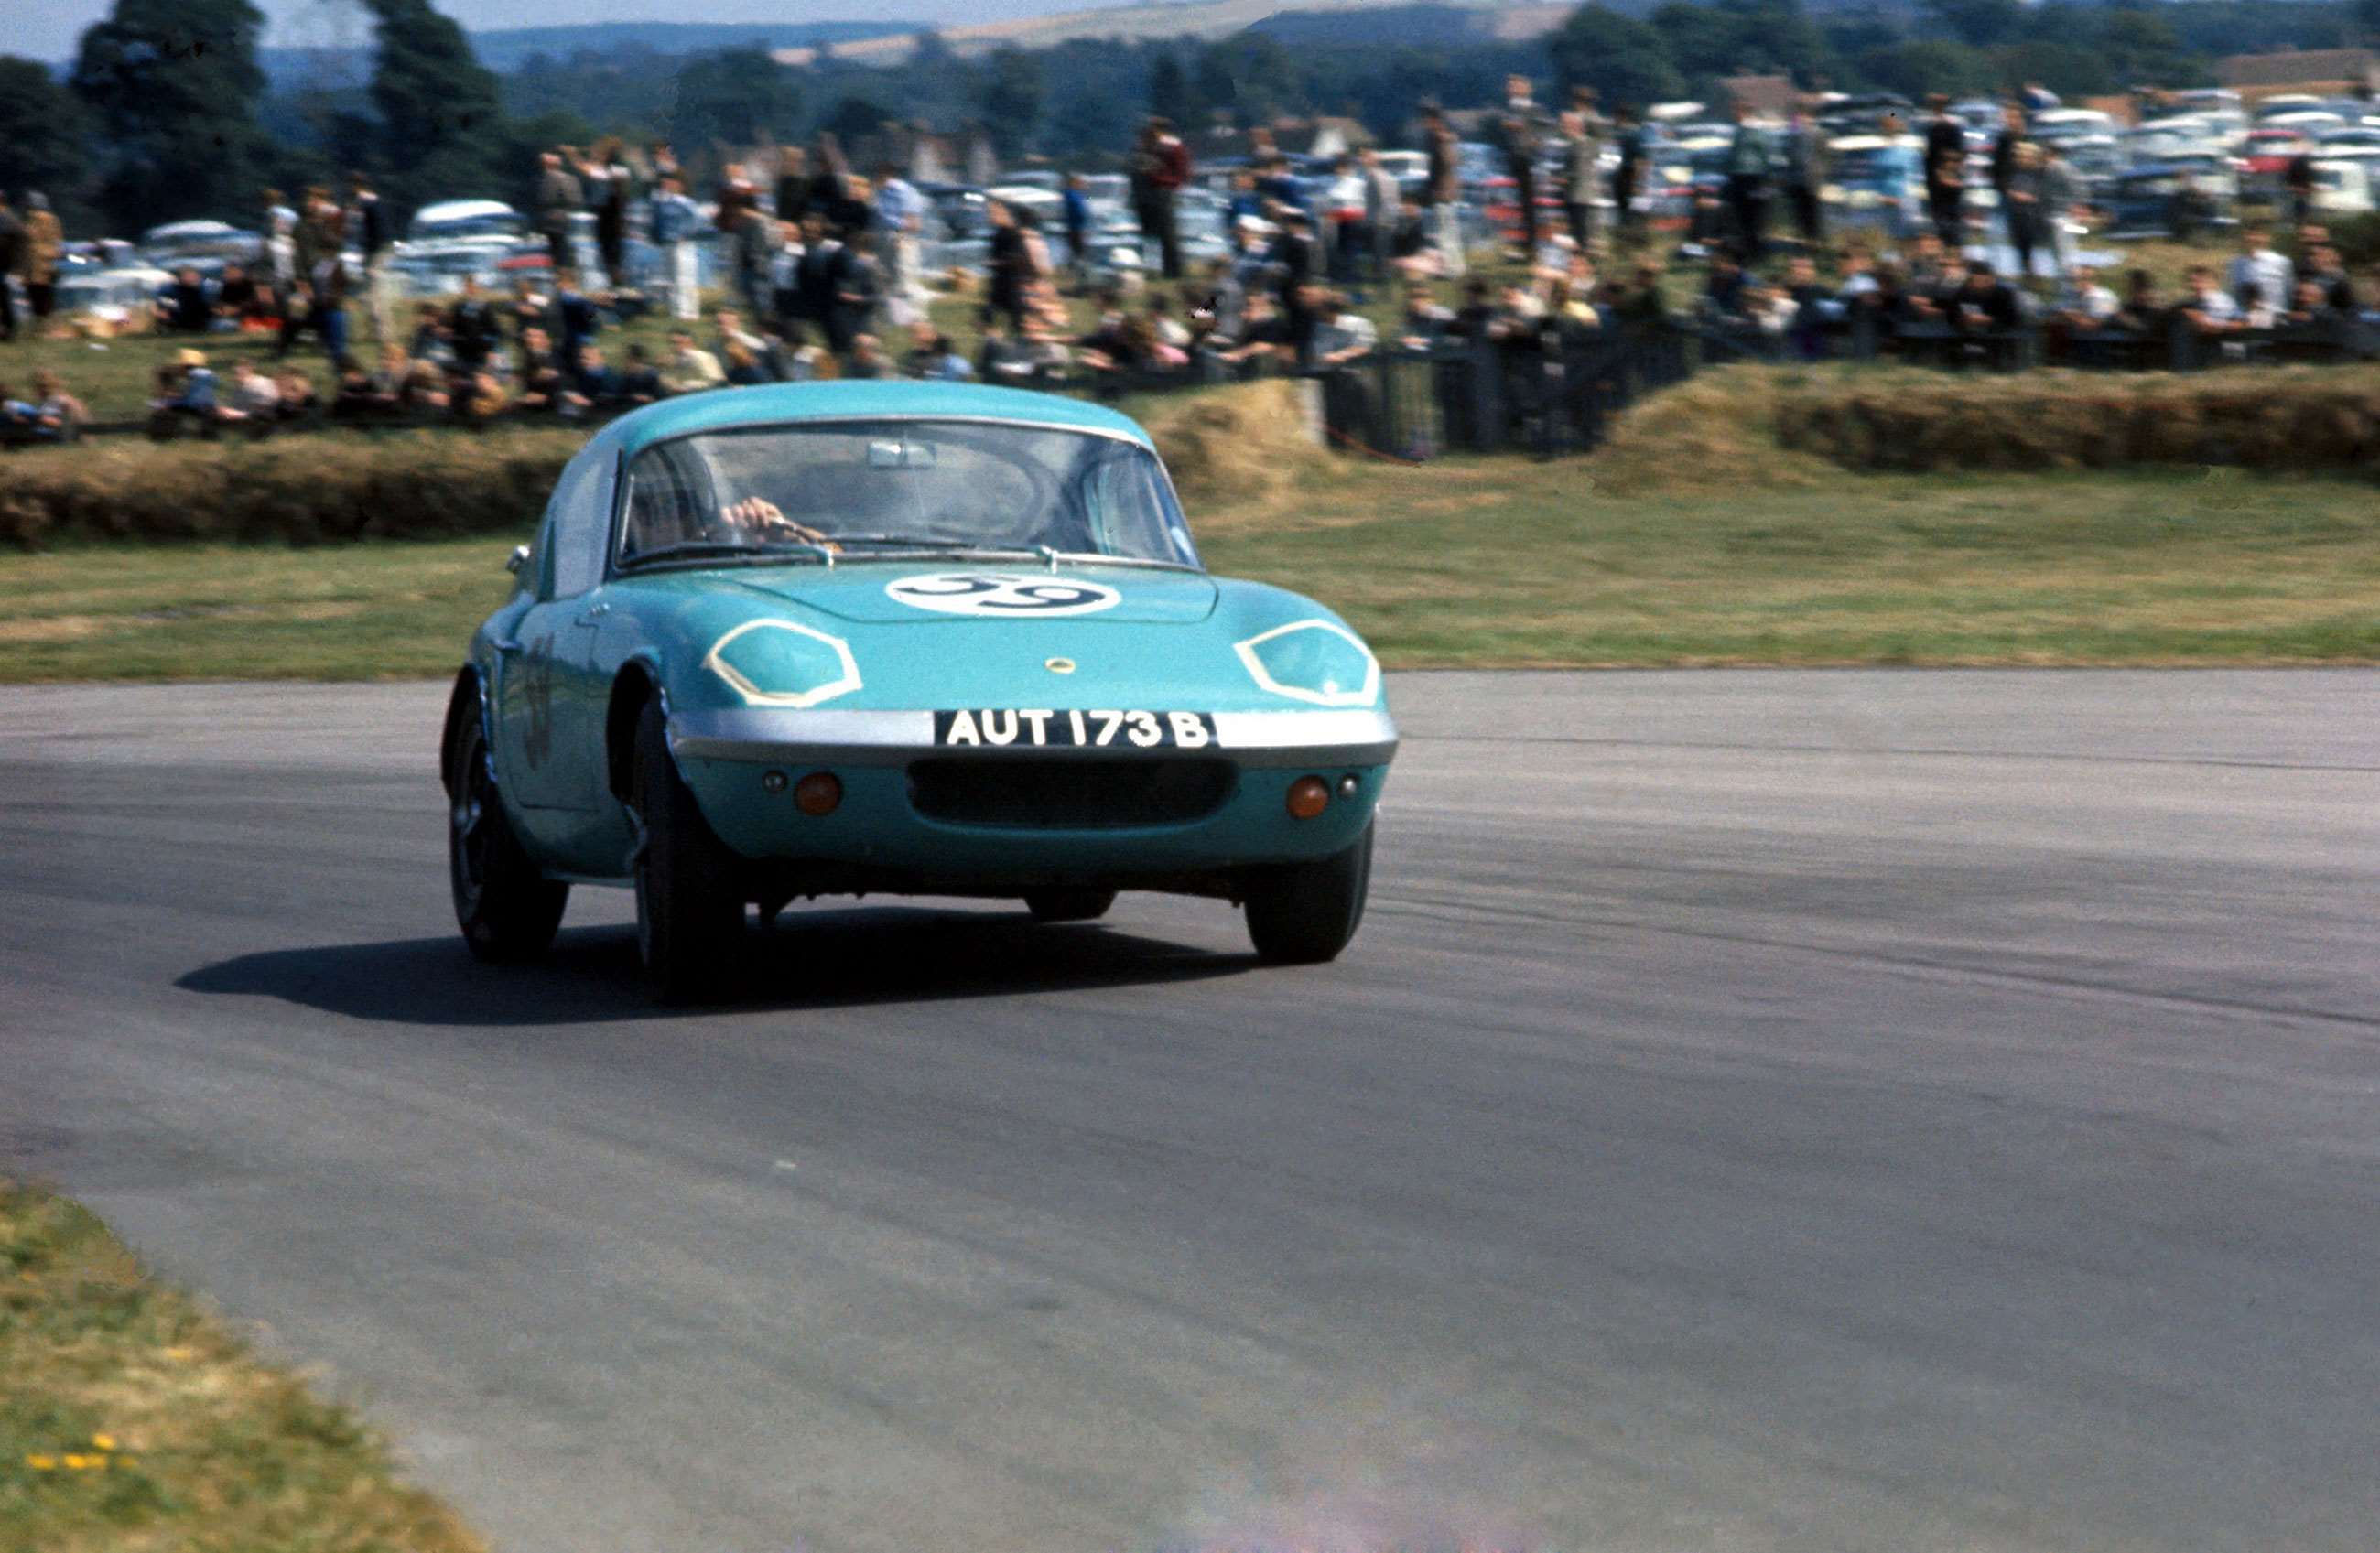 best-lotus-road-cars-3-lotus-elan-goodwood-1964-sutton-mi-goodwood-27012021.jpg